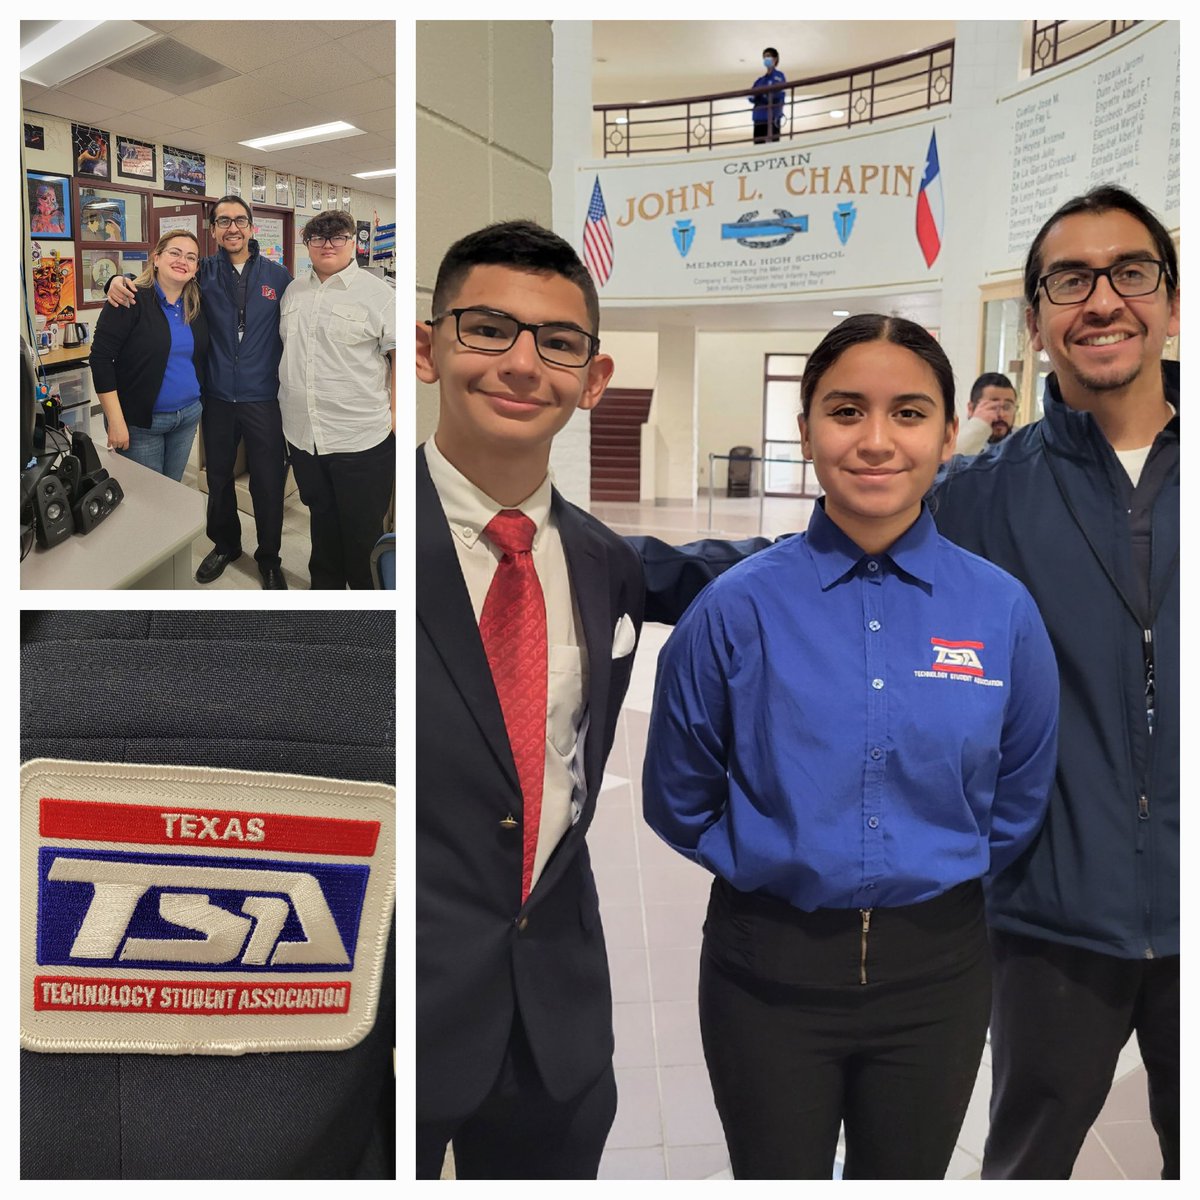 Good Luck To All Our Ysleta ISD Students Competing today at TSA! @YsletaISDCTE @YsletaISD @Texas_TSA